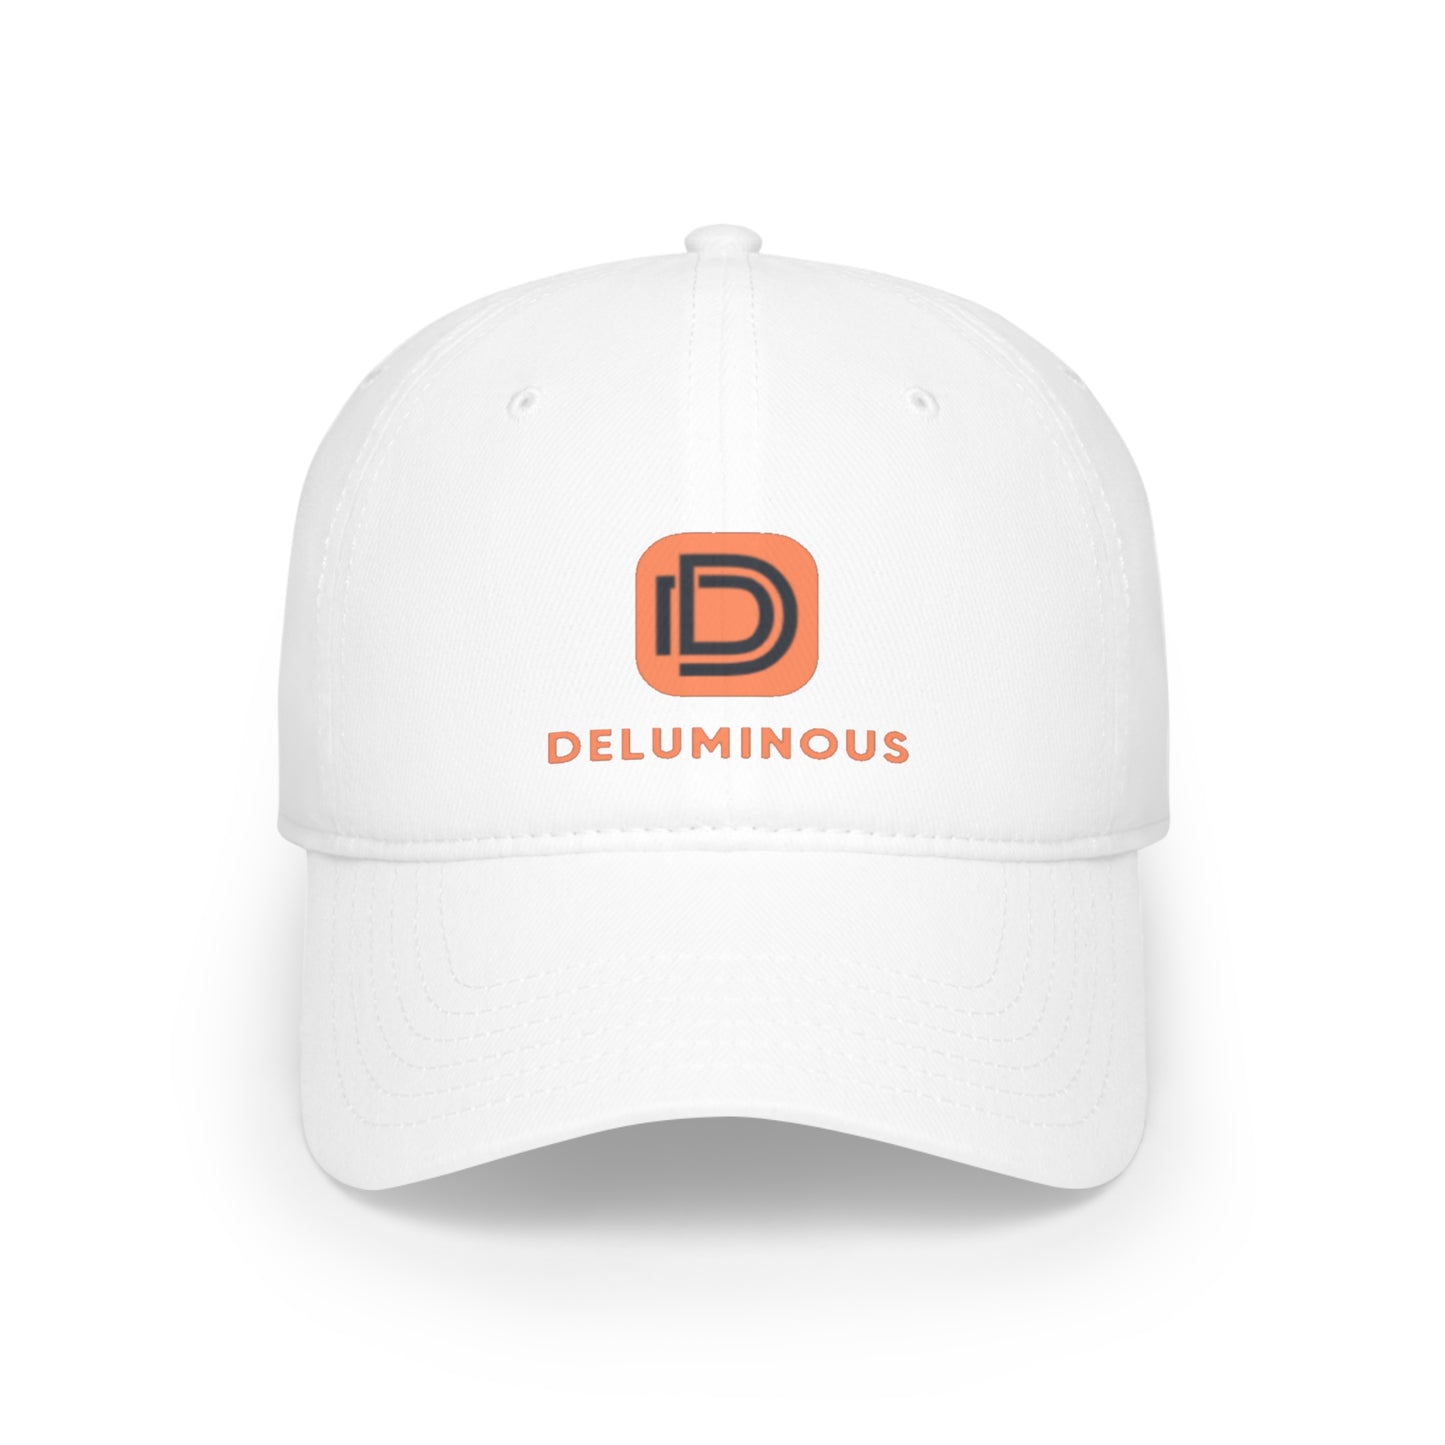 Deluminous - Baseball Cap